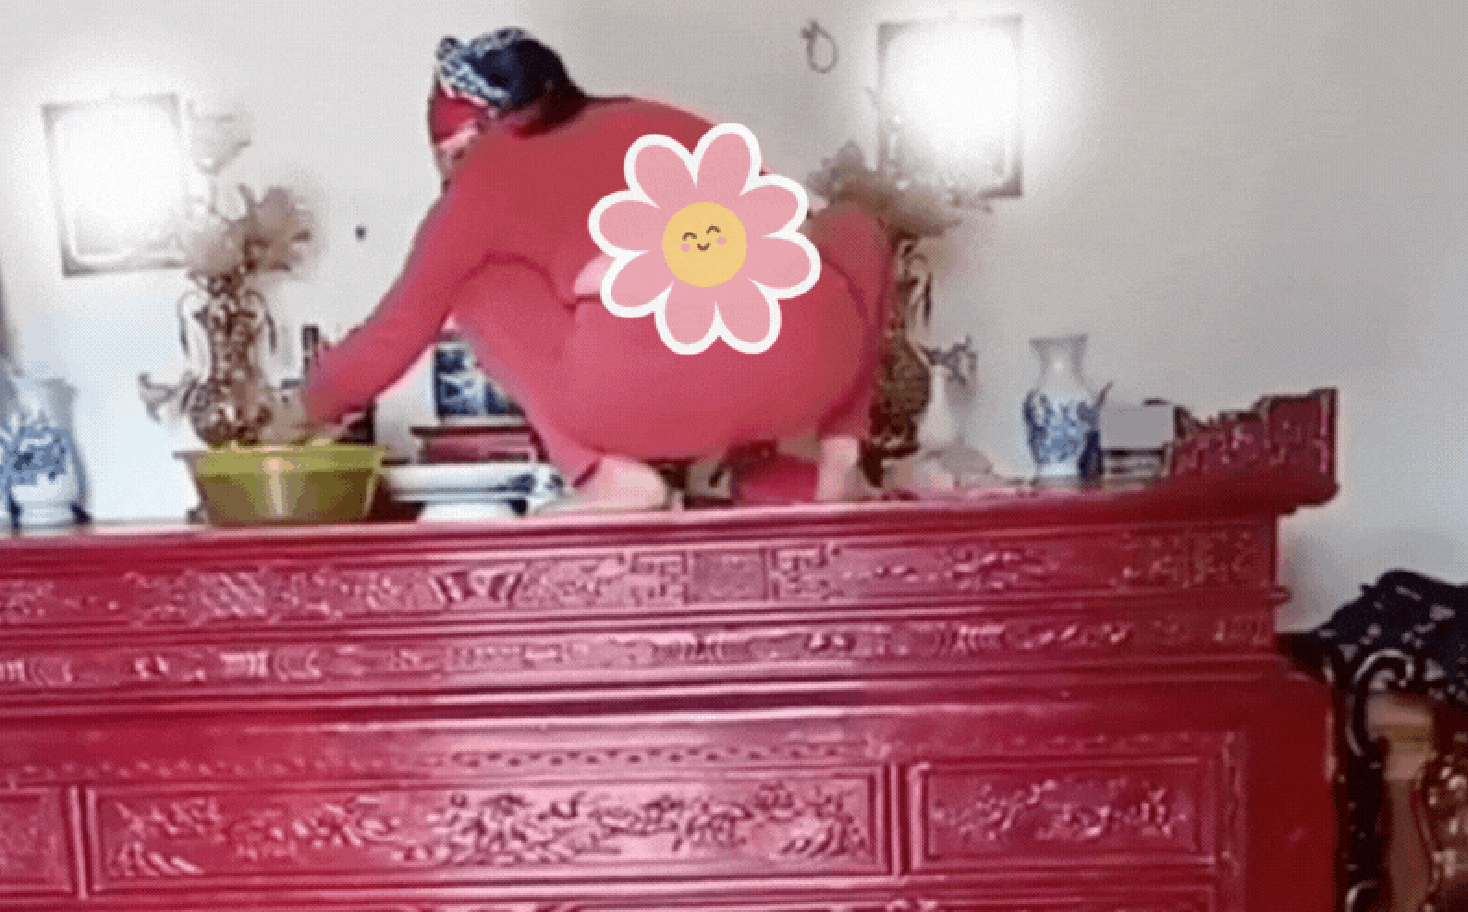 Hành động trèo lên bàn thờ để lau dọn của người phụ nữ bị ném đá kịch liệt